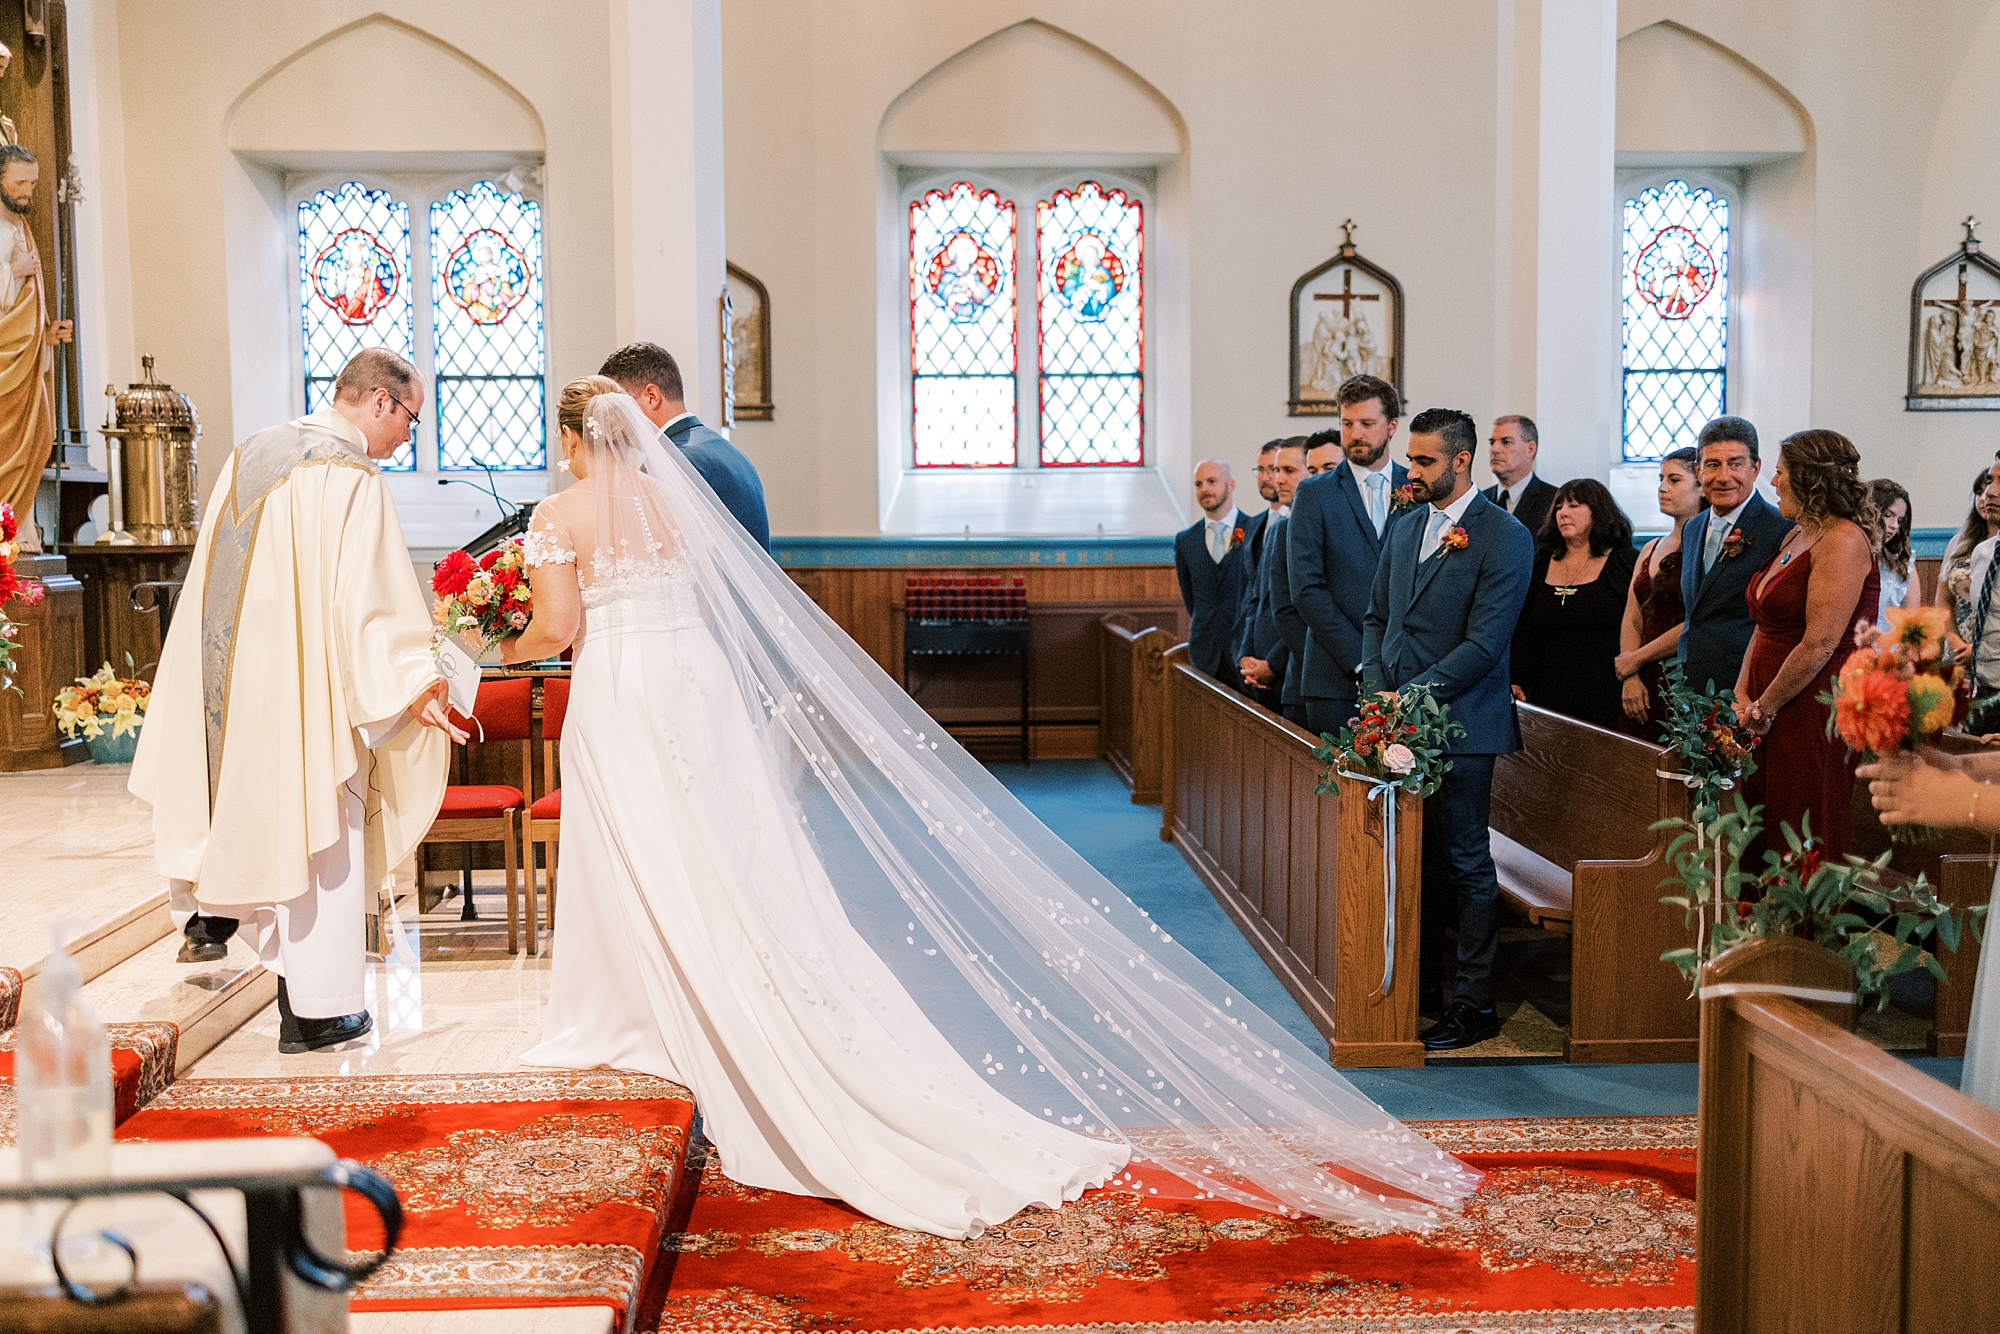 bride walks down aisle with veil behind her at St. Ann’s Roman Catholic Church